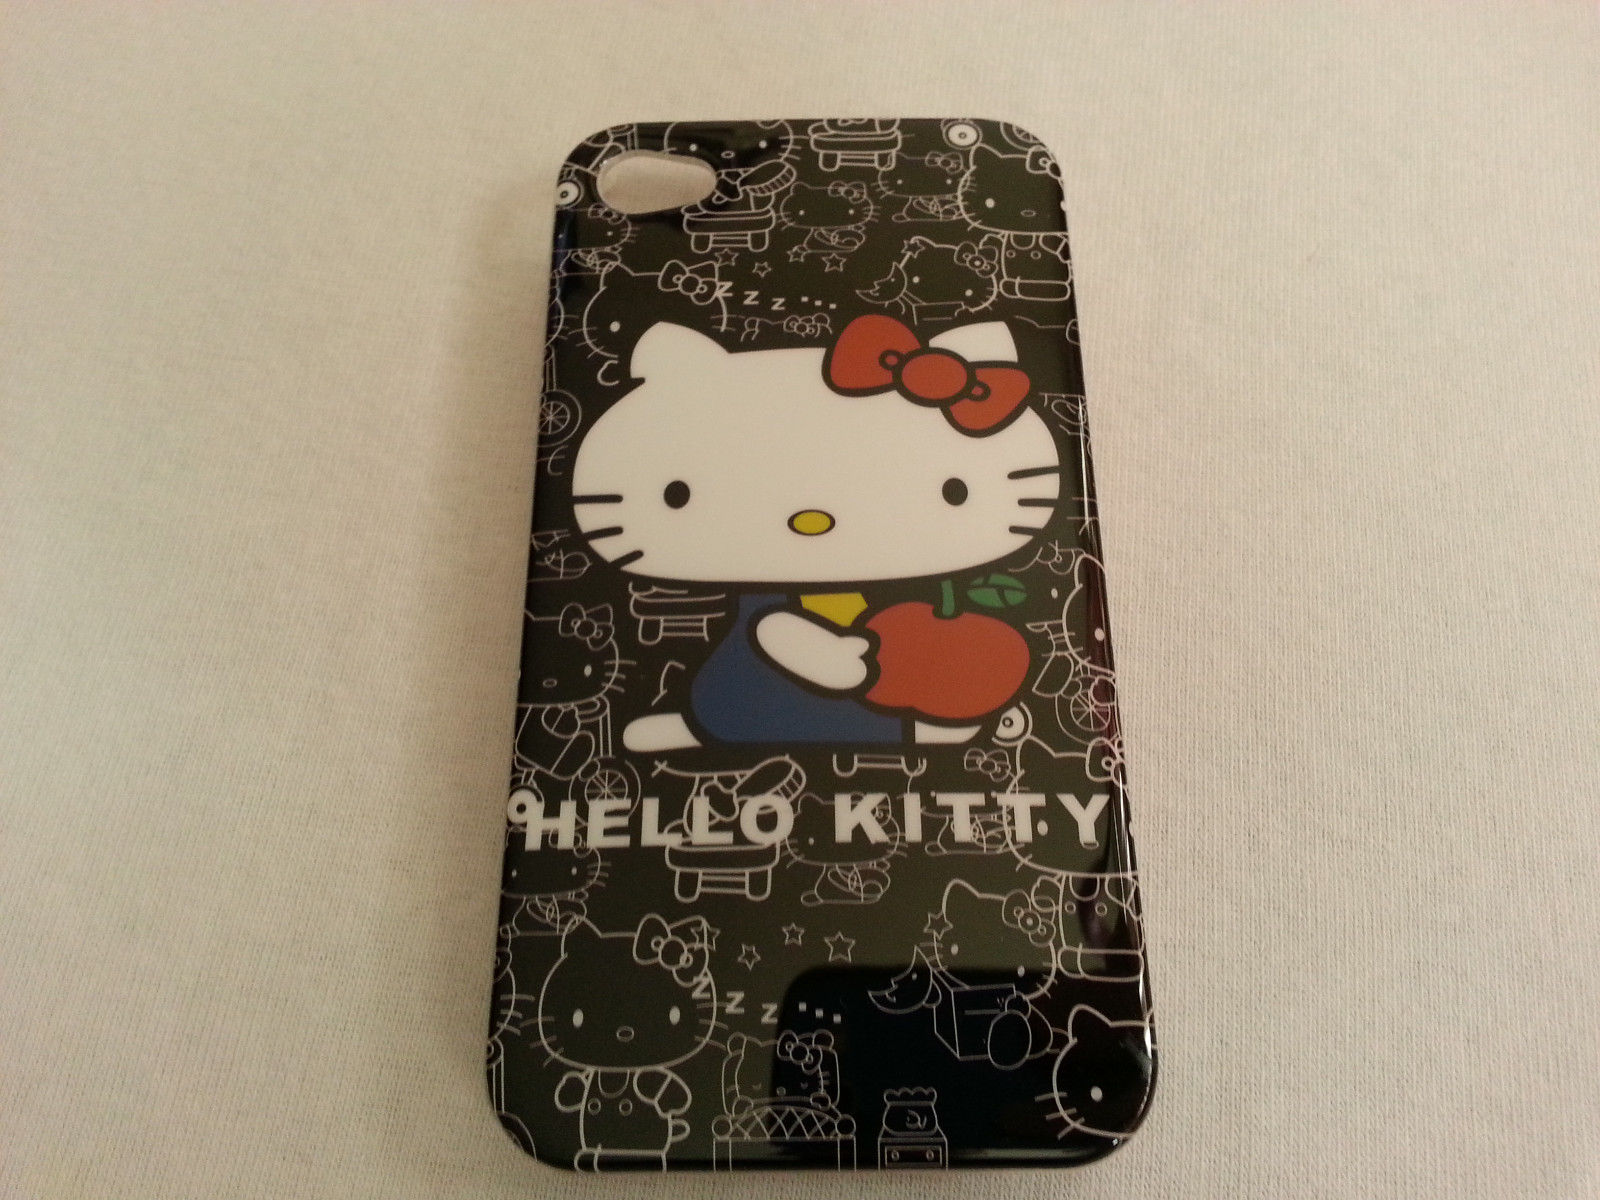 เคส ลาย Hellokitty สำหรับ iPhone 4 น่ารักๆ แบบที่ 6 ราคาประหยัด (พร้อมส่ง)  021182 รูปที่ 1